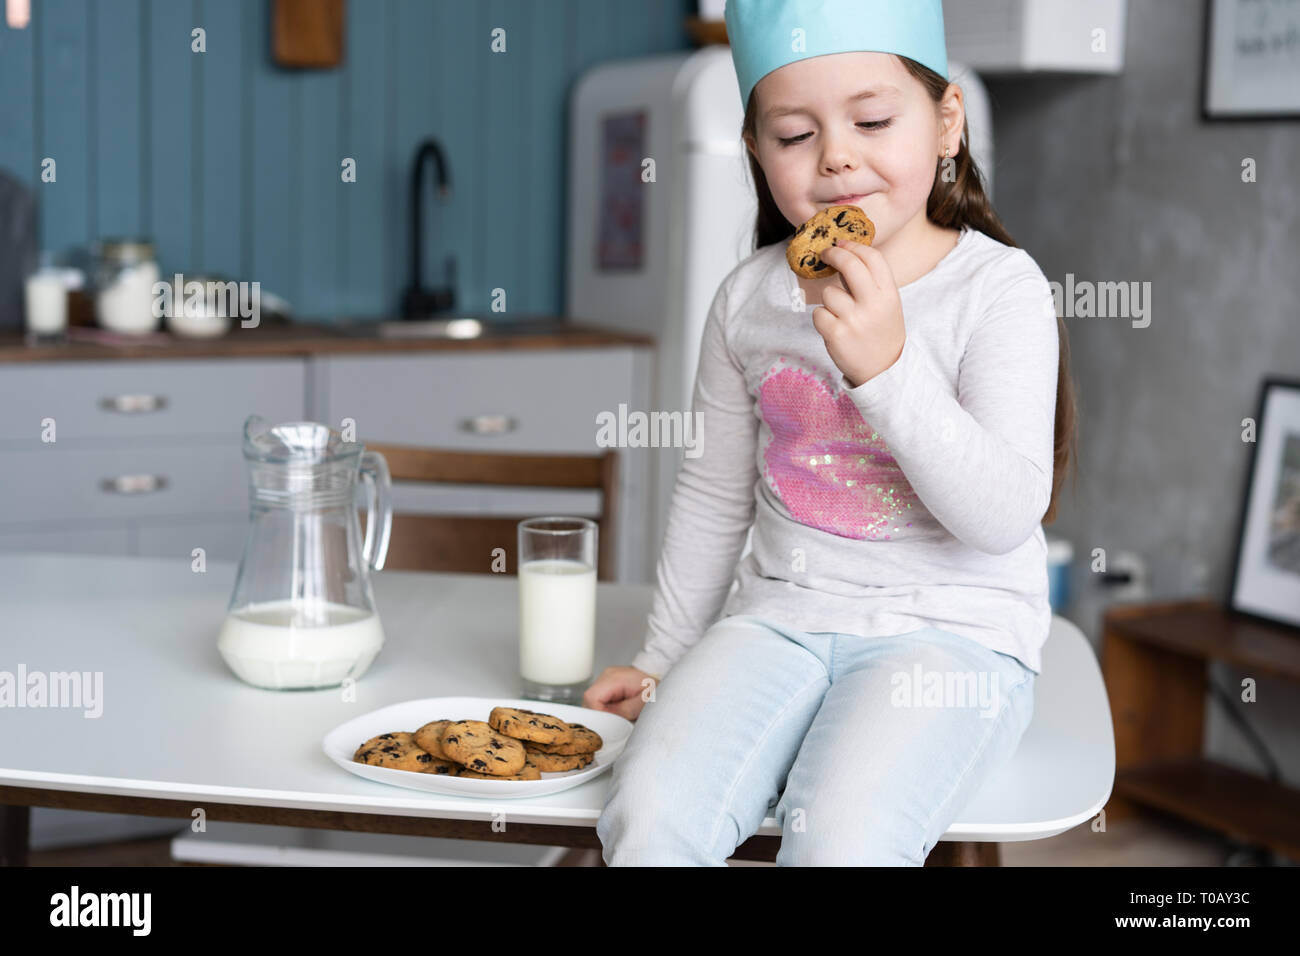 Süße kleine Mädchen, dass ein backblech von Cookies. Stockfoto